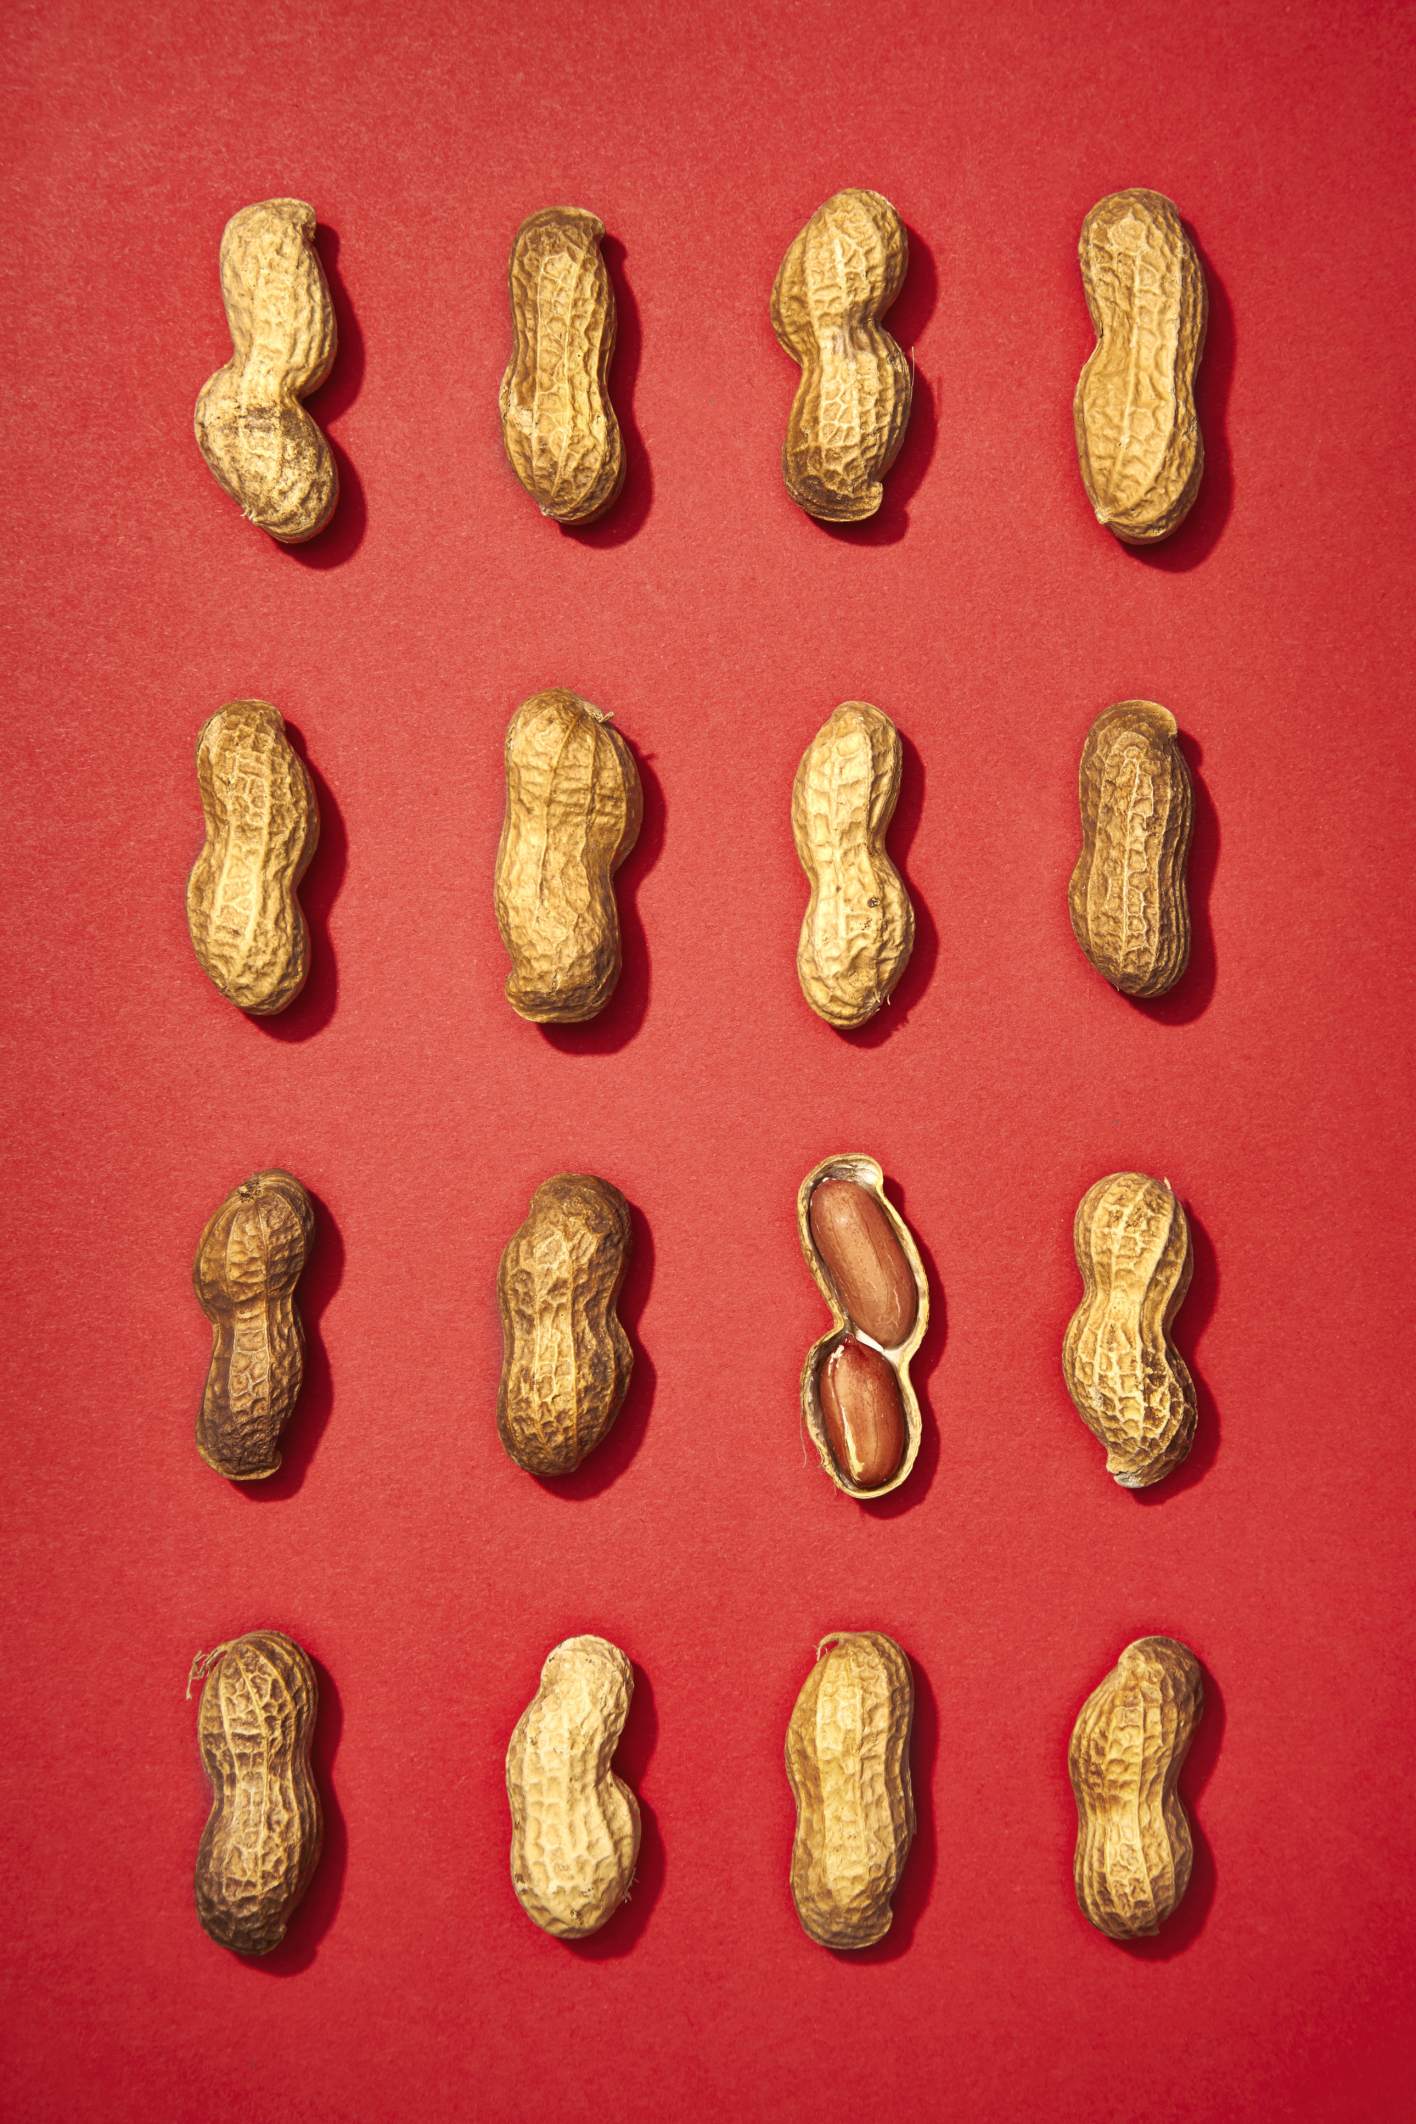 Grid of Peanuts